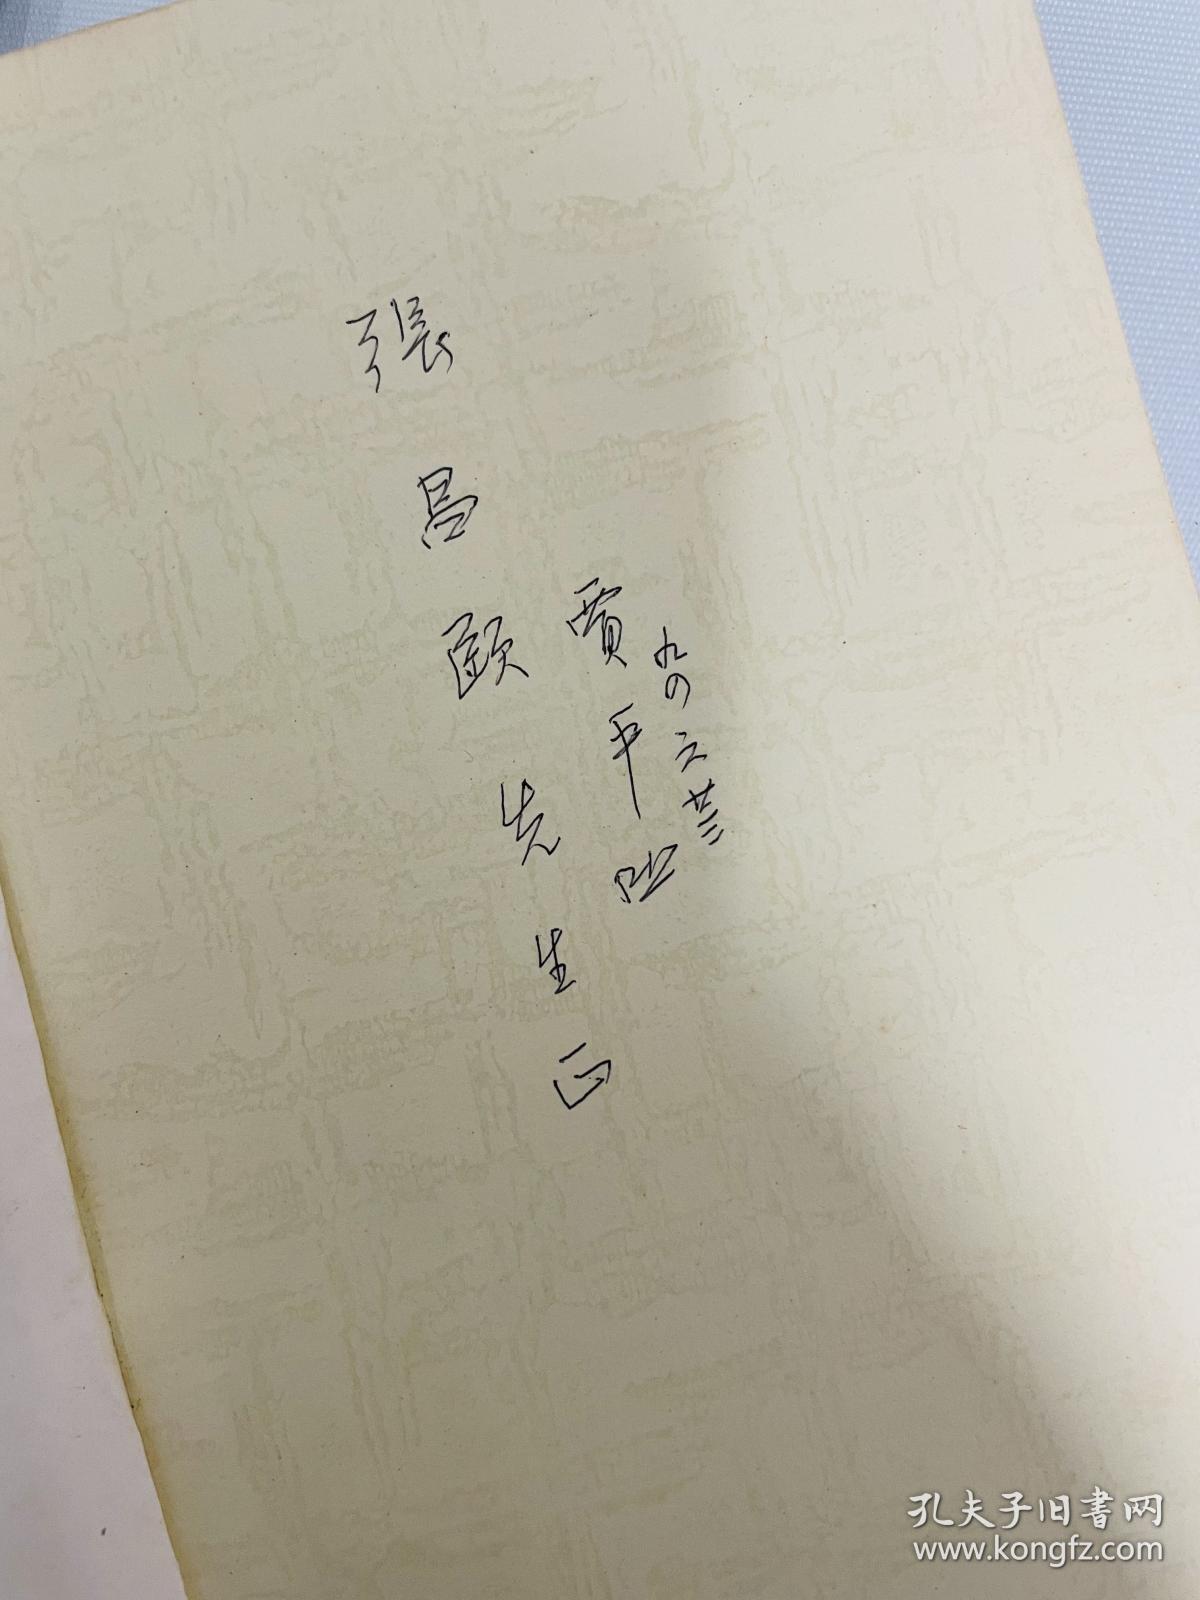 賈平凹先生1994年6月23日簽贈張昌頤先生之《廢都》